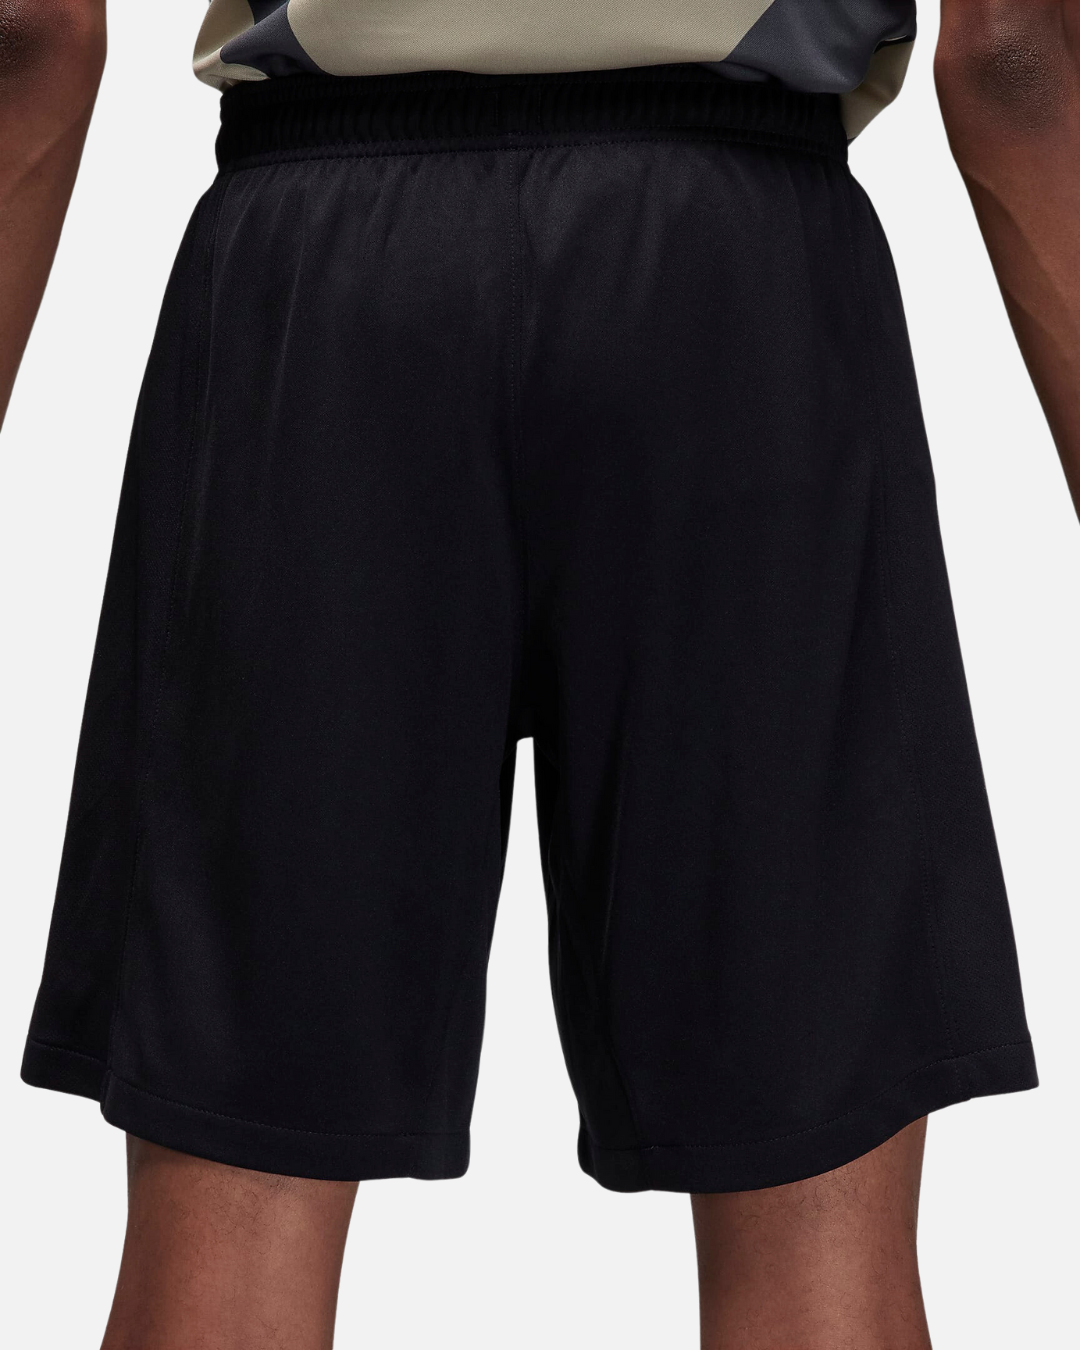 PSG x Jordan 2023/2024 training shorts - Black/Grey